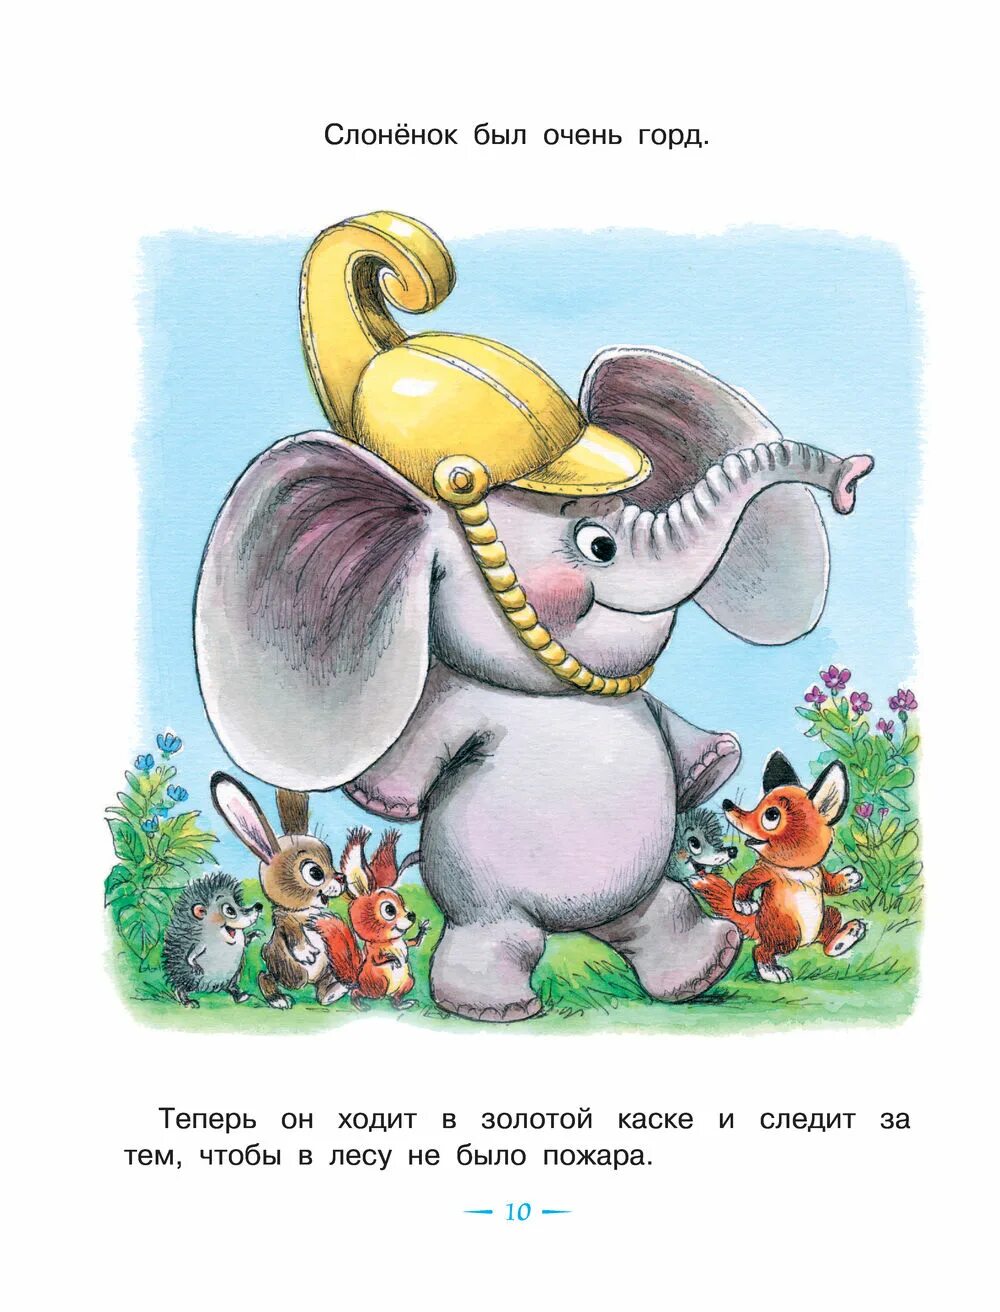 Слоник сказка. Жил на свете слонёнок — Цыферов г.м. Цыферова жил на свете Слоненок.